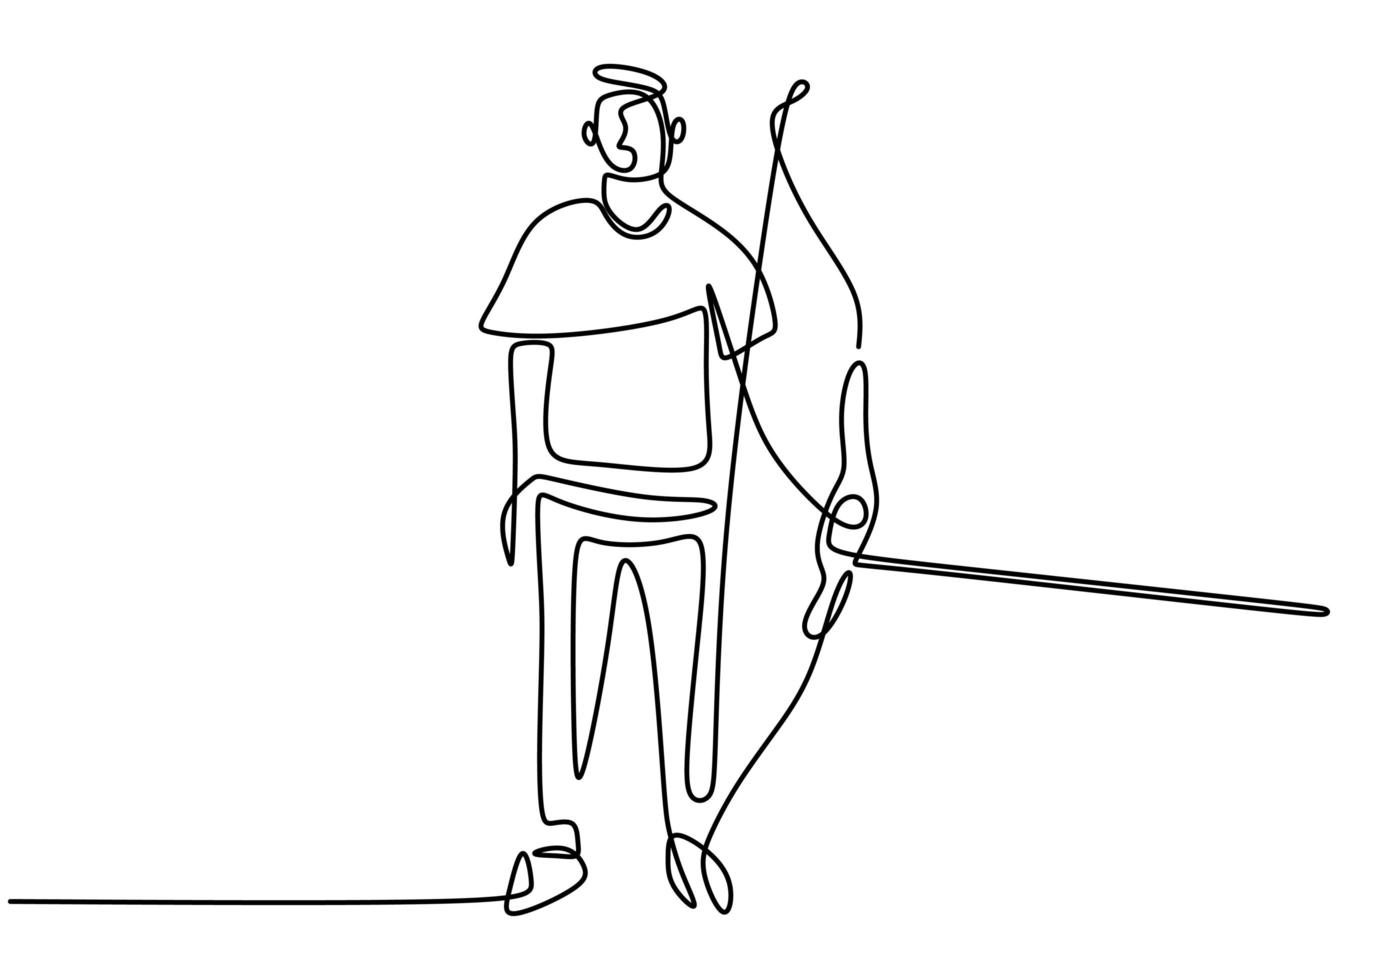 dessin au trait continu unique du jeune homme archer professionnel vecteur